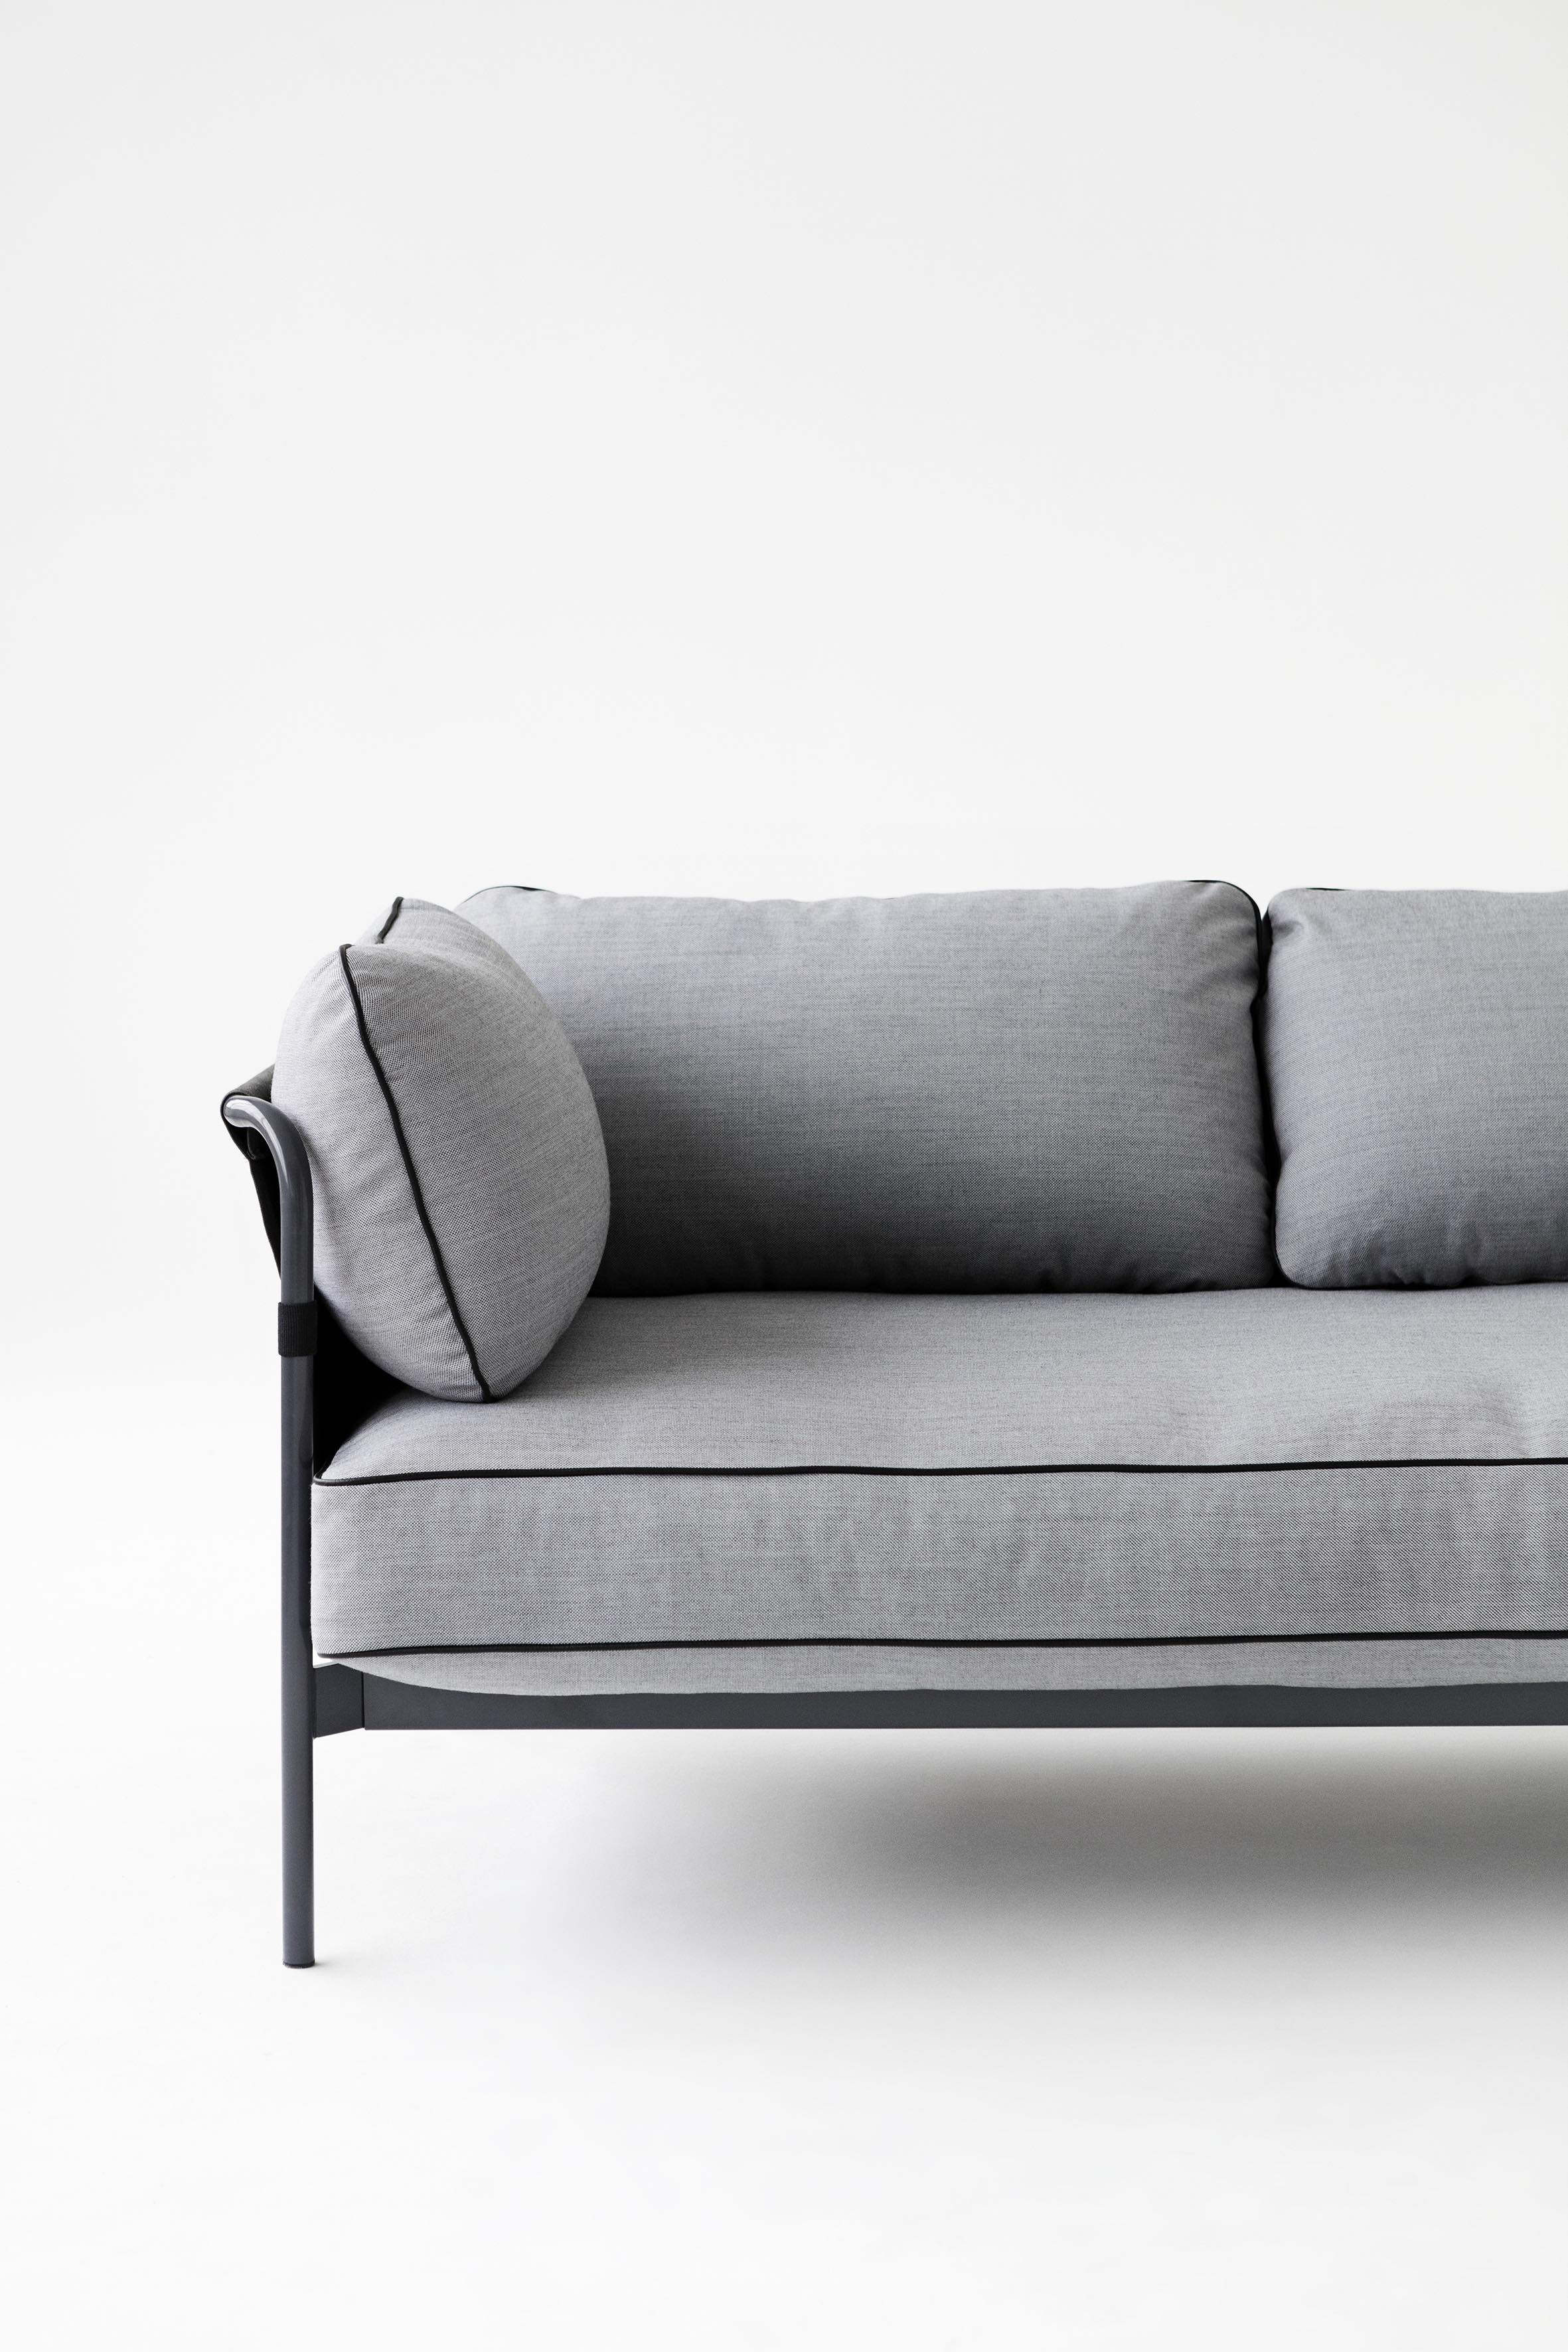 HAY revolutioniert Sofas mit dem neuen Sofa CAN by Design Bestseller_1